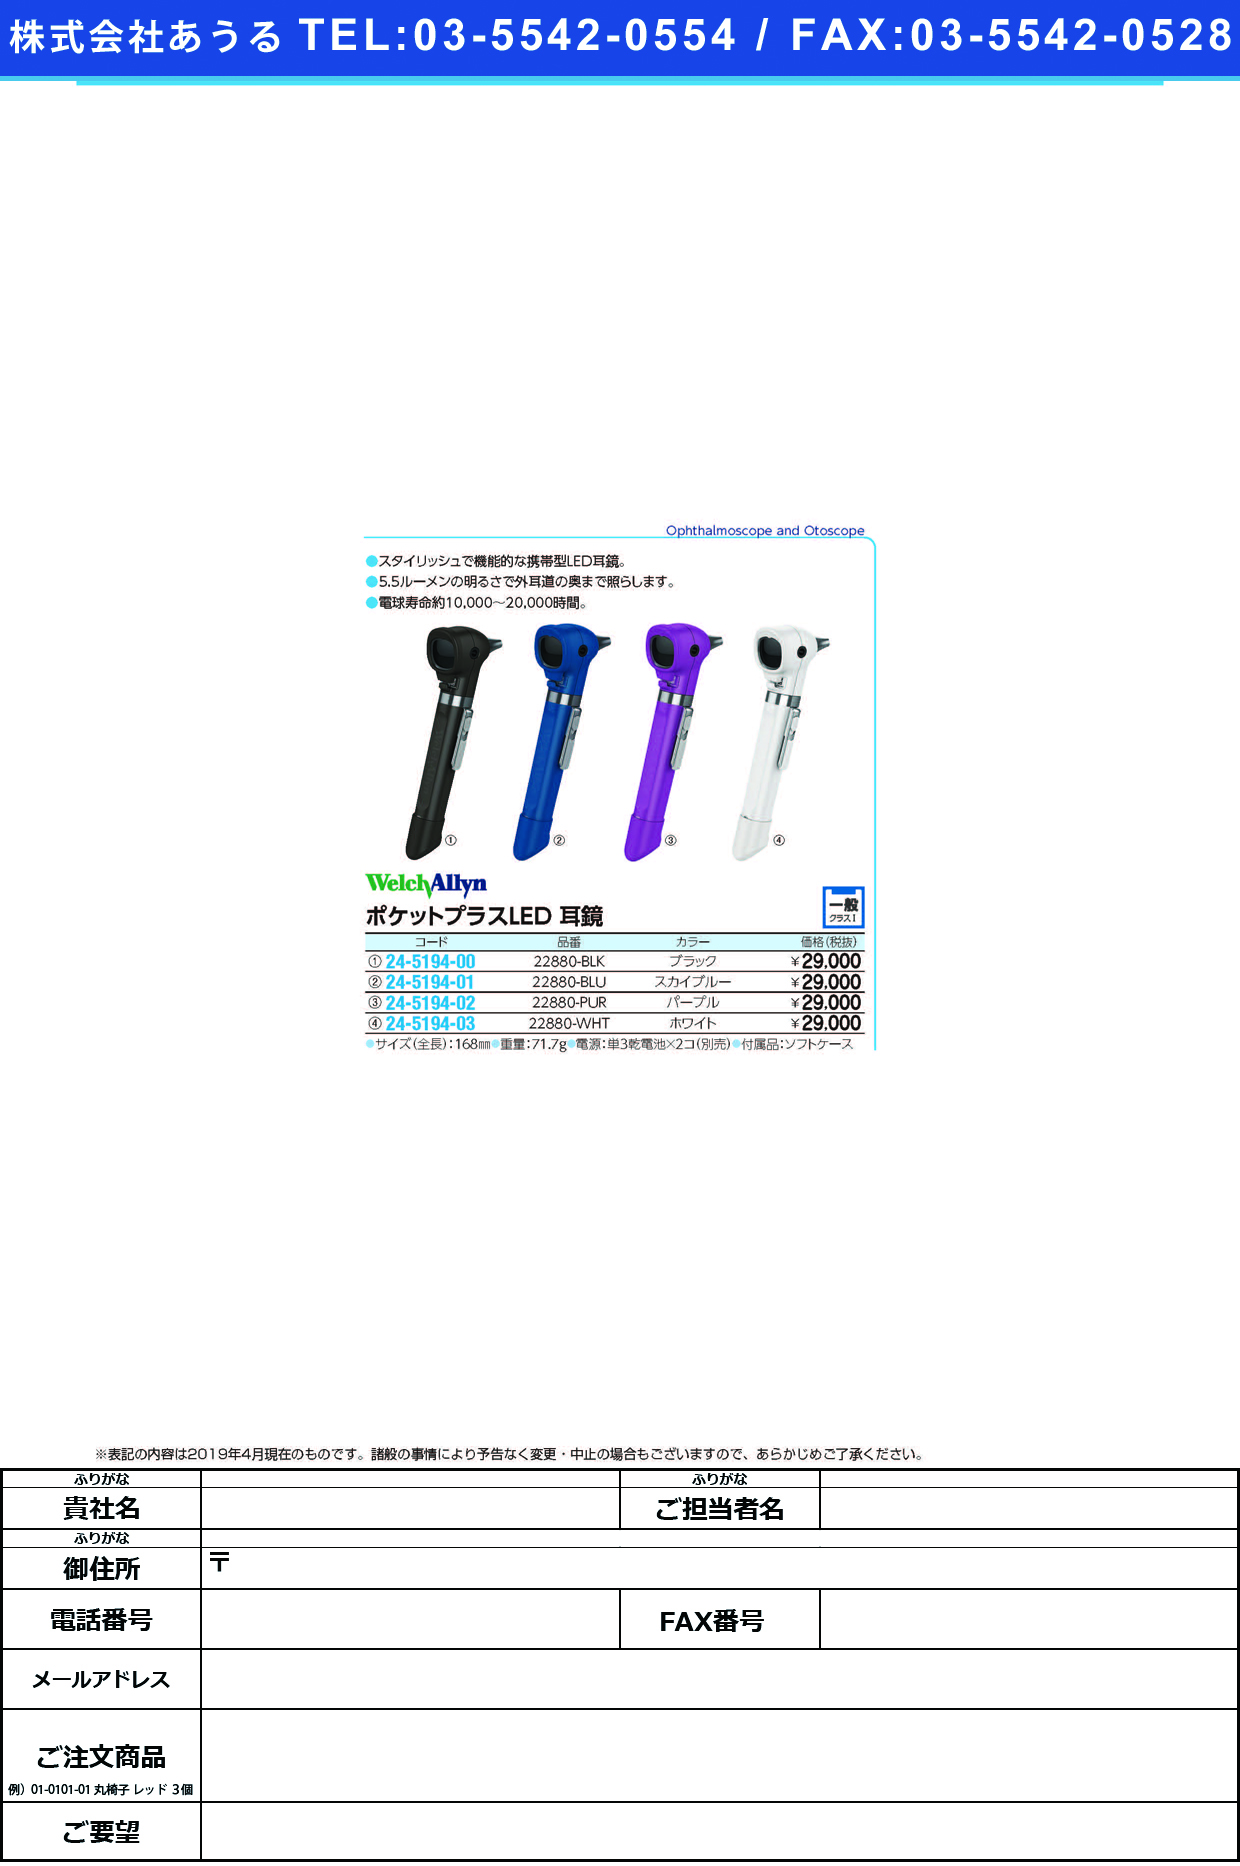 (24-5194-00)ポケットプラスＬＥＤ耳鏡 22880-BLK(ﾌﾞﾗｯｸ) ﾎﾟｹｯﾄﾌﾟﾗｽLEDｼﾞｷｮｳ【1台単位】【2019年カタログ商品】